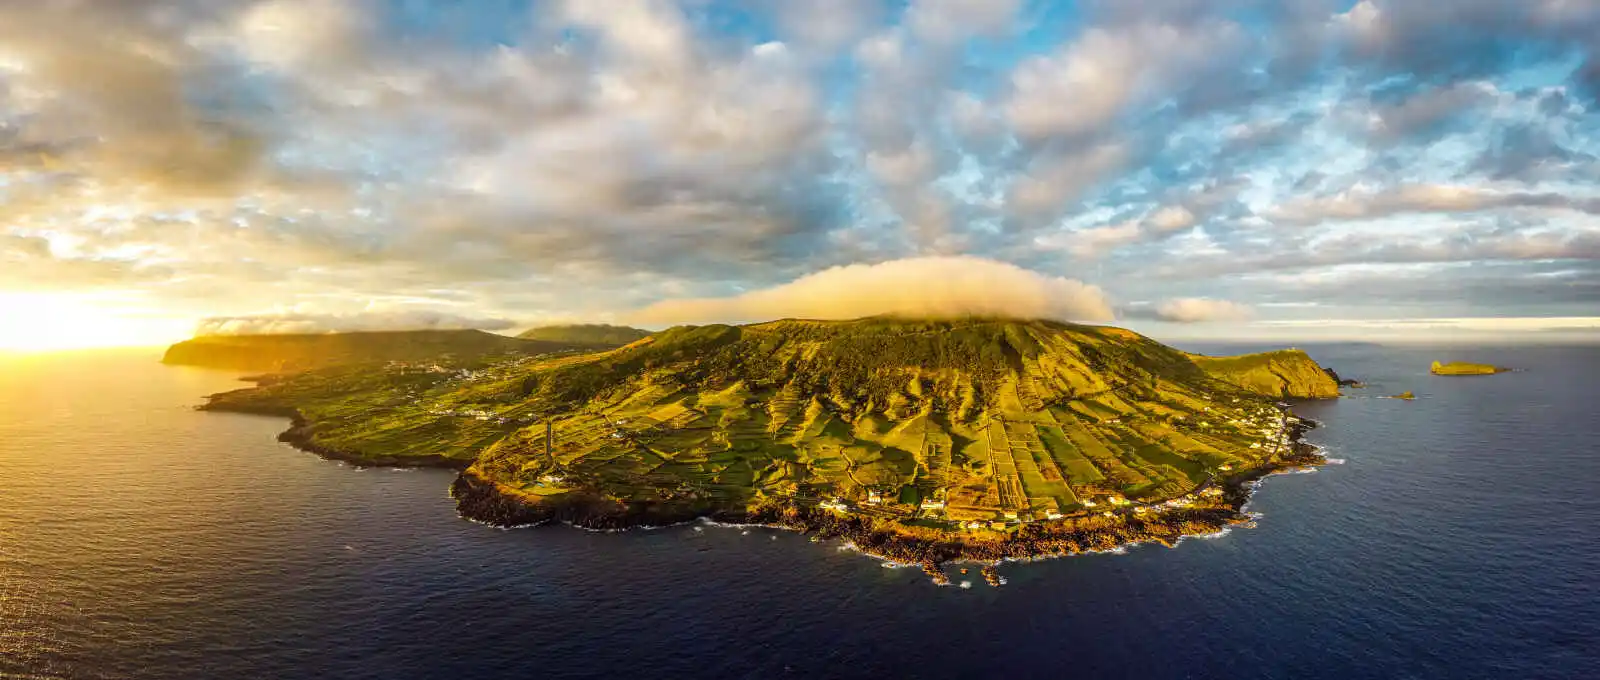 Portugal : Toutes les couleurs des Açores